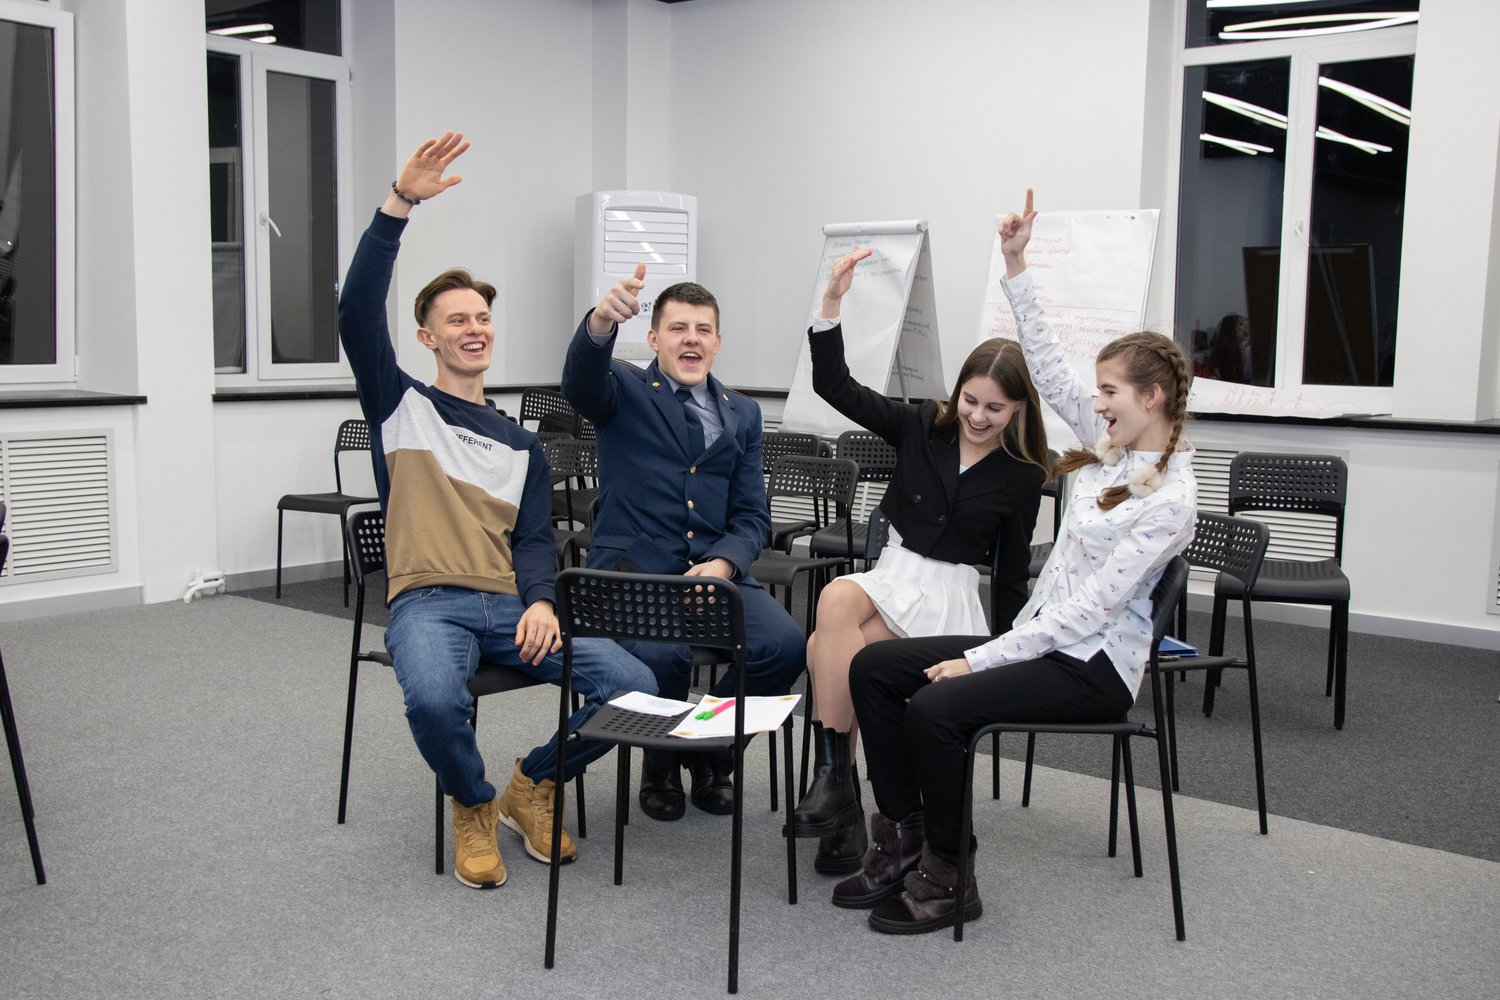 29 марта Псковский городской молодёжный центр проведёт для подростков в возрасте от 14 до 17 лет бесплатную интеллектуальную викторину в формате командных соревнований.